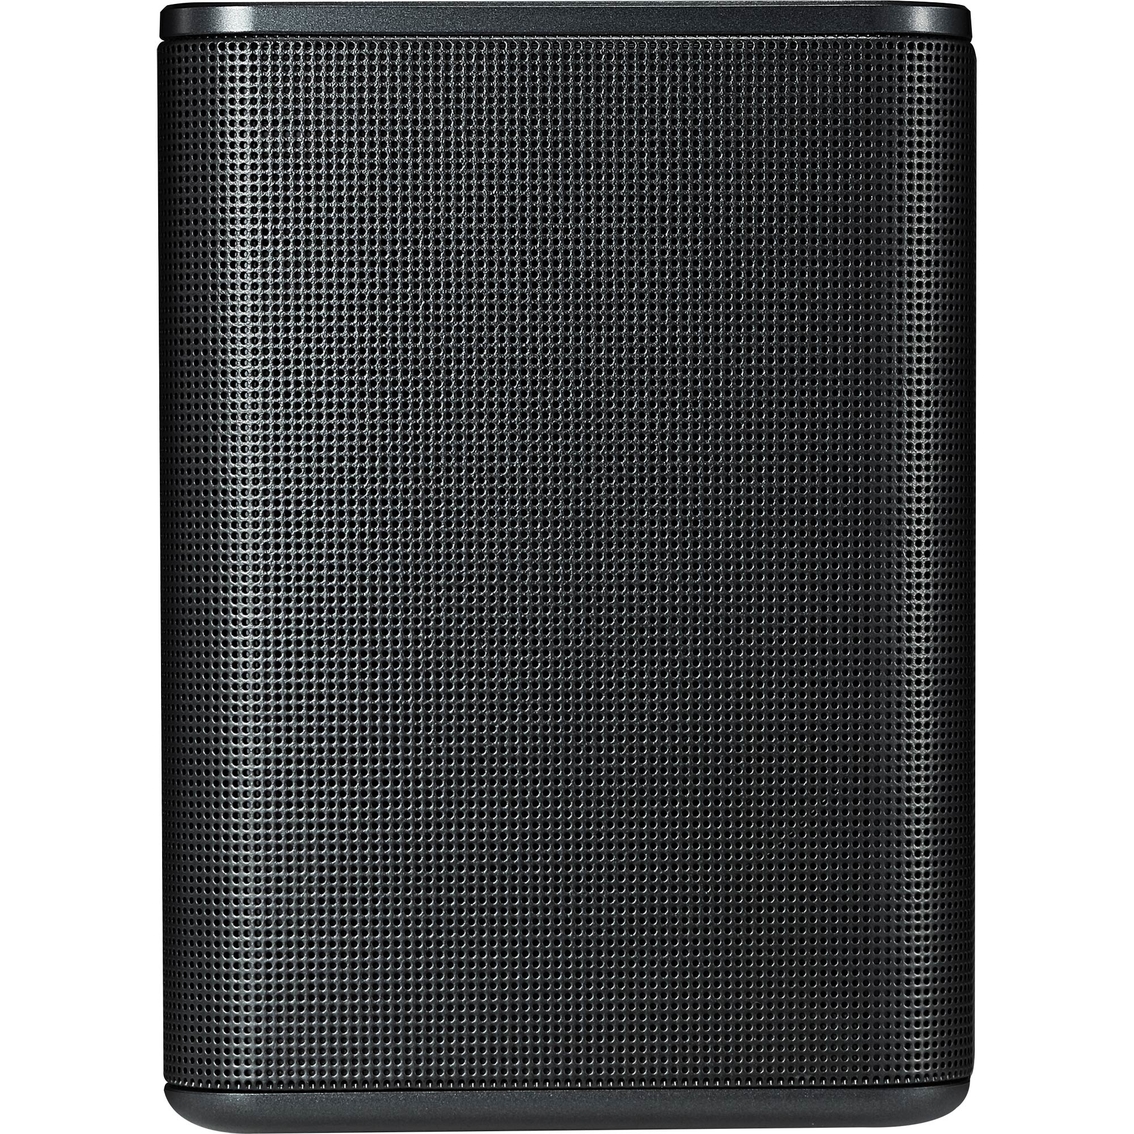 LG SPK8 140W Wireless Rear Speaker Kit - Image 4 of 4